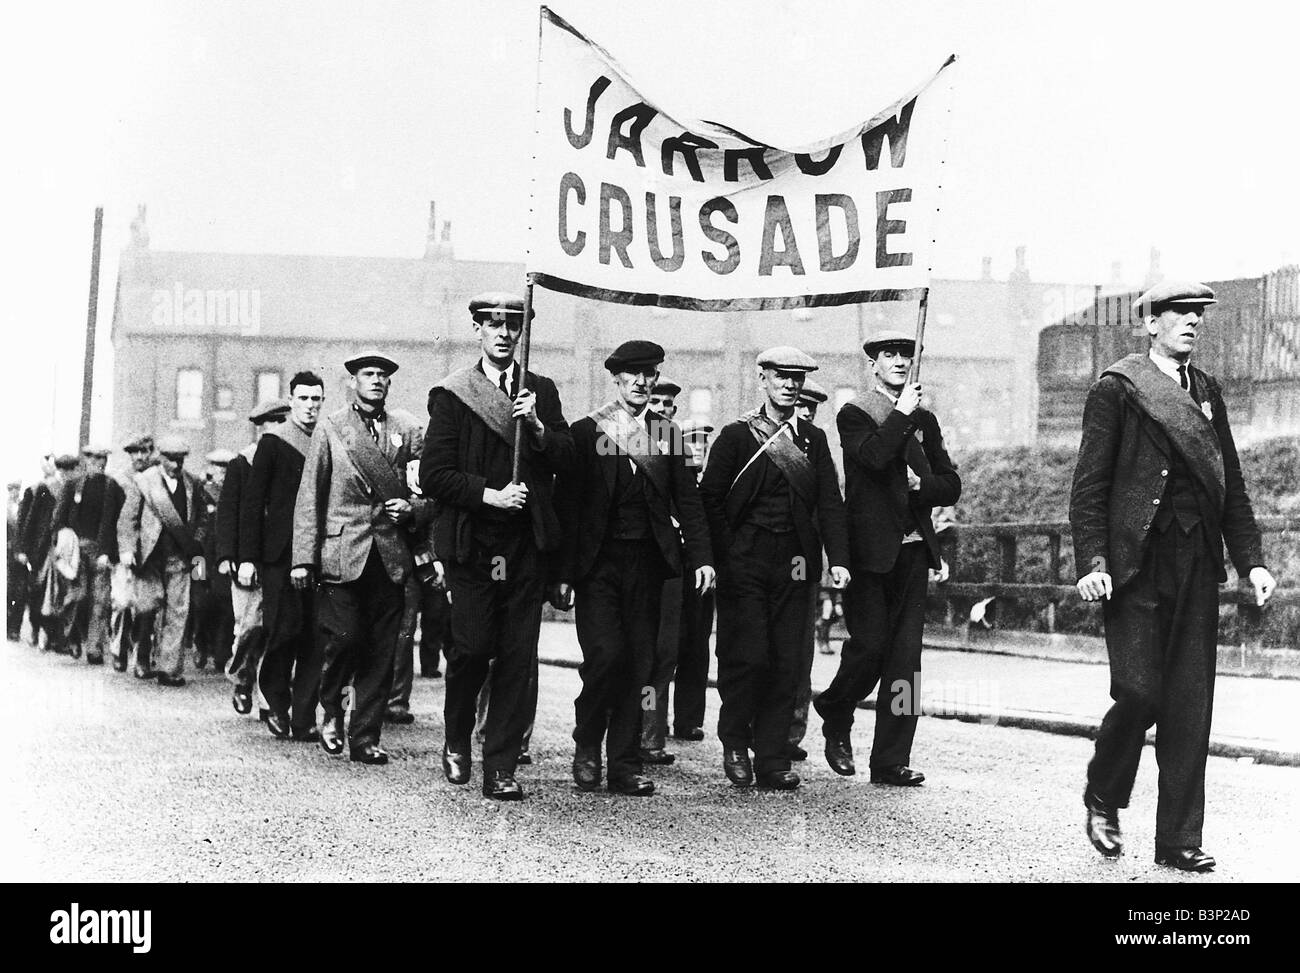 La disoccupazione Jarrow dimostranti uomini in uniforme che porta una lettura banner Jarrow crociata marcia di protesta Foto Stock